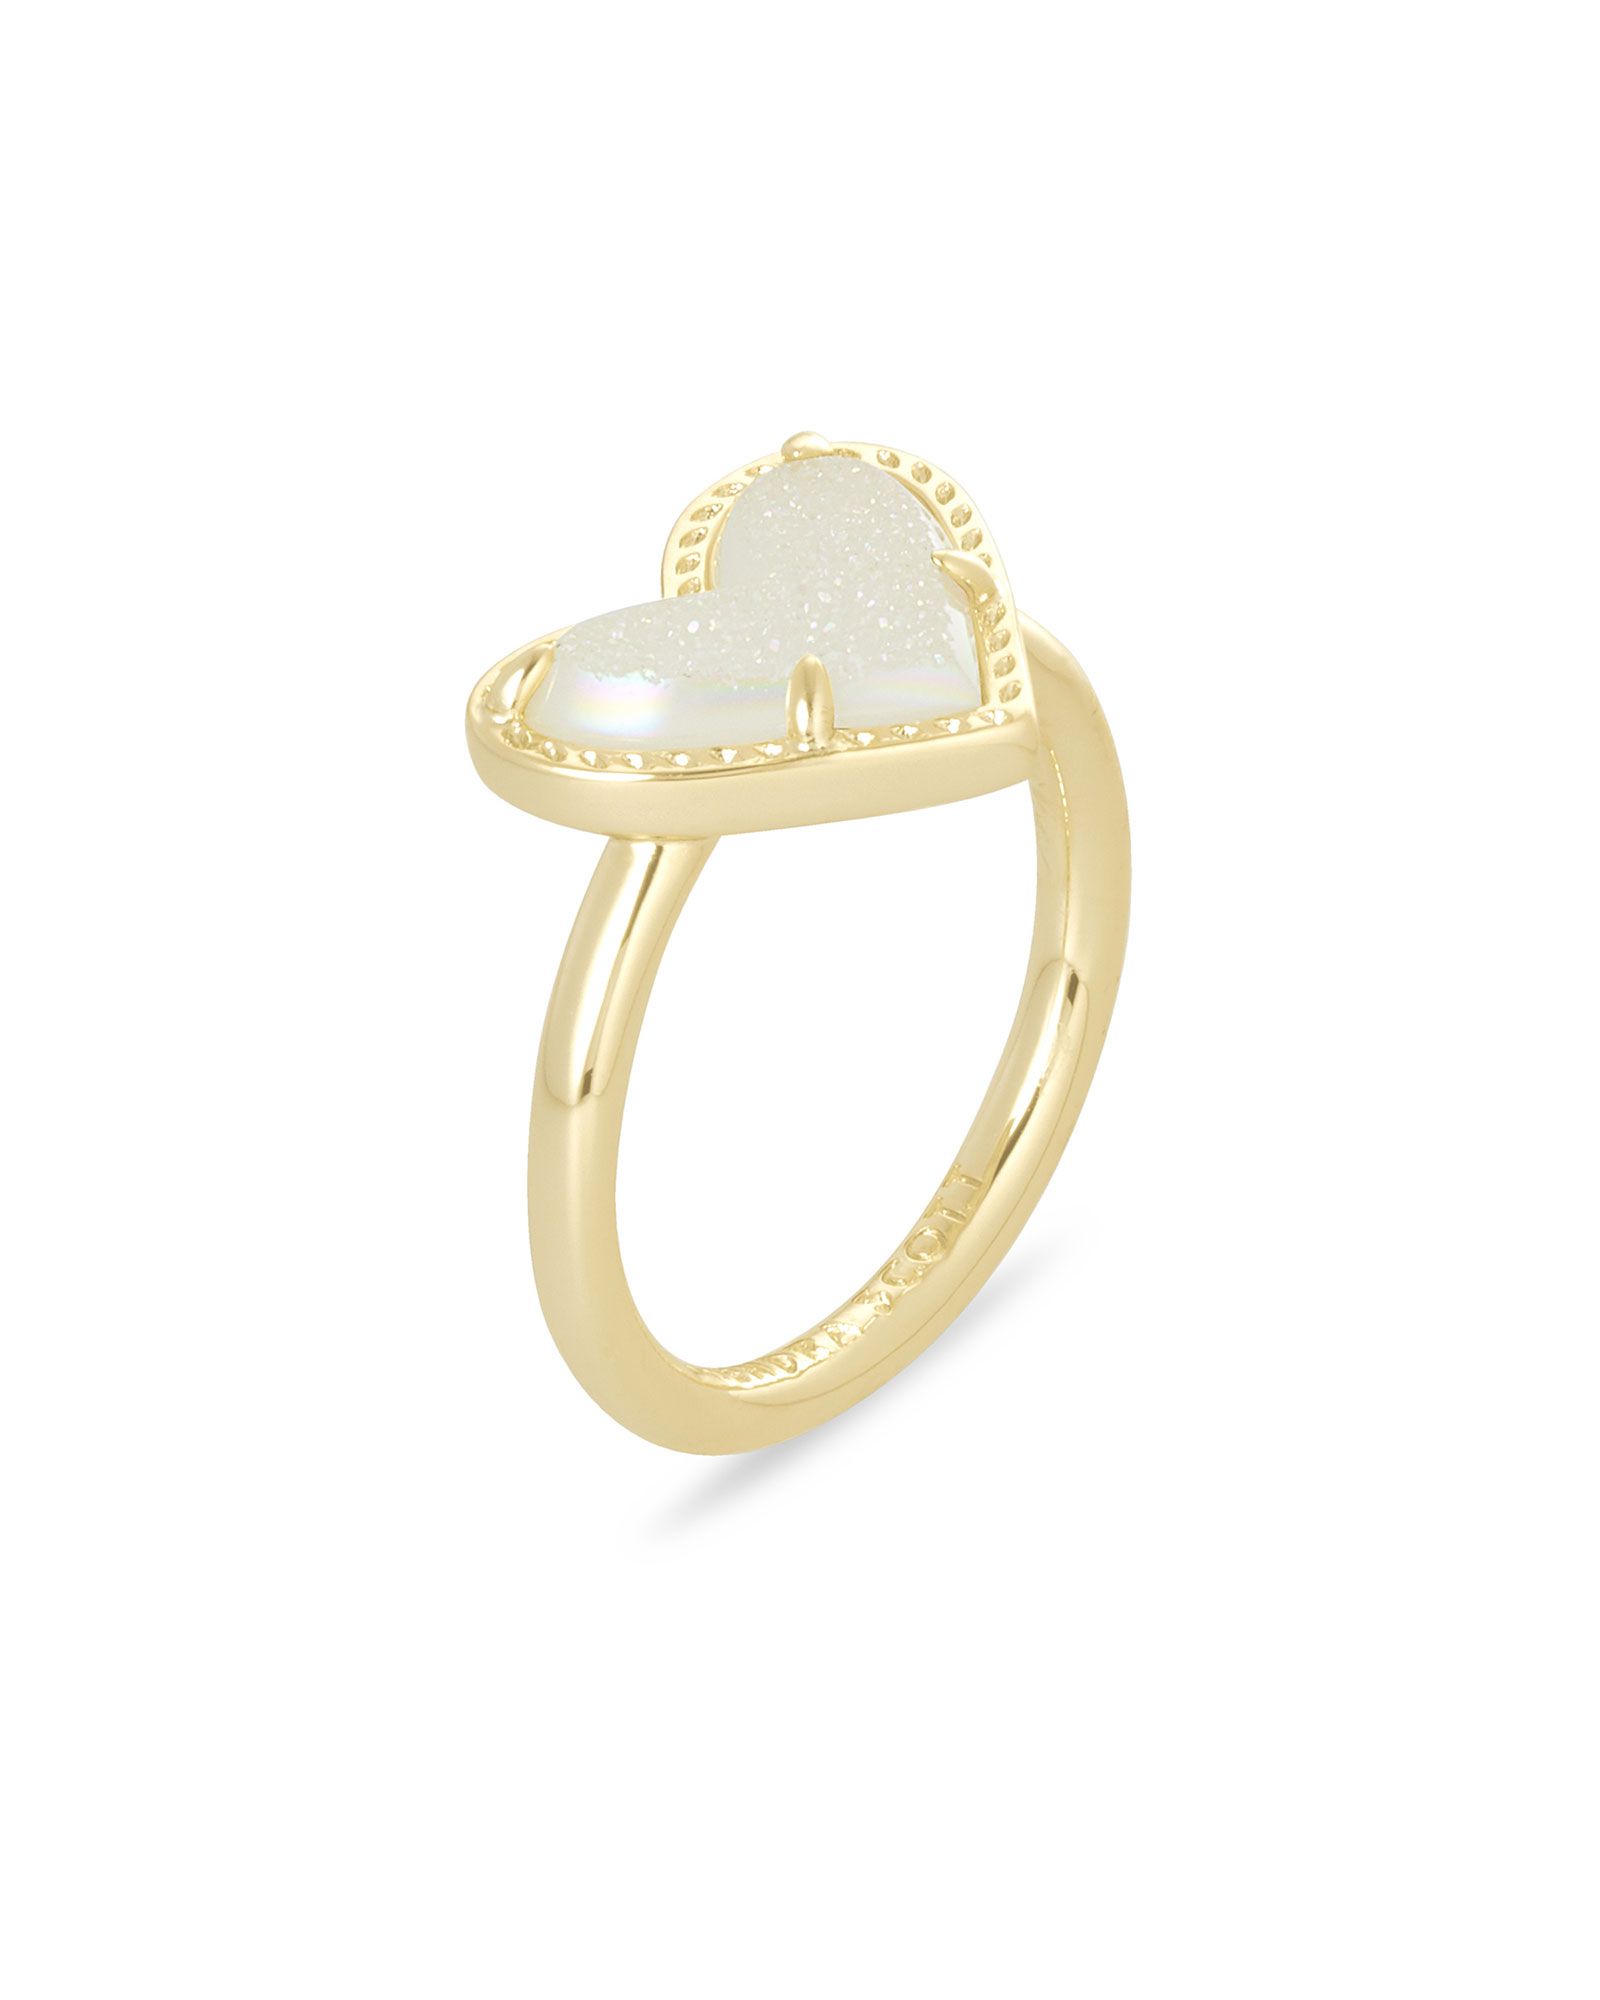 Ari Heart Gold Band Ring in Iridescent Drusy | Kendra Scott | Kendra Scott